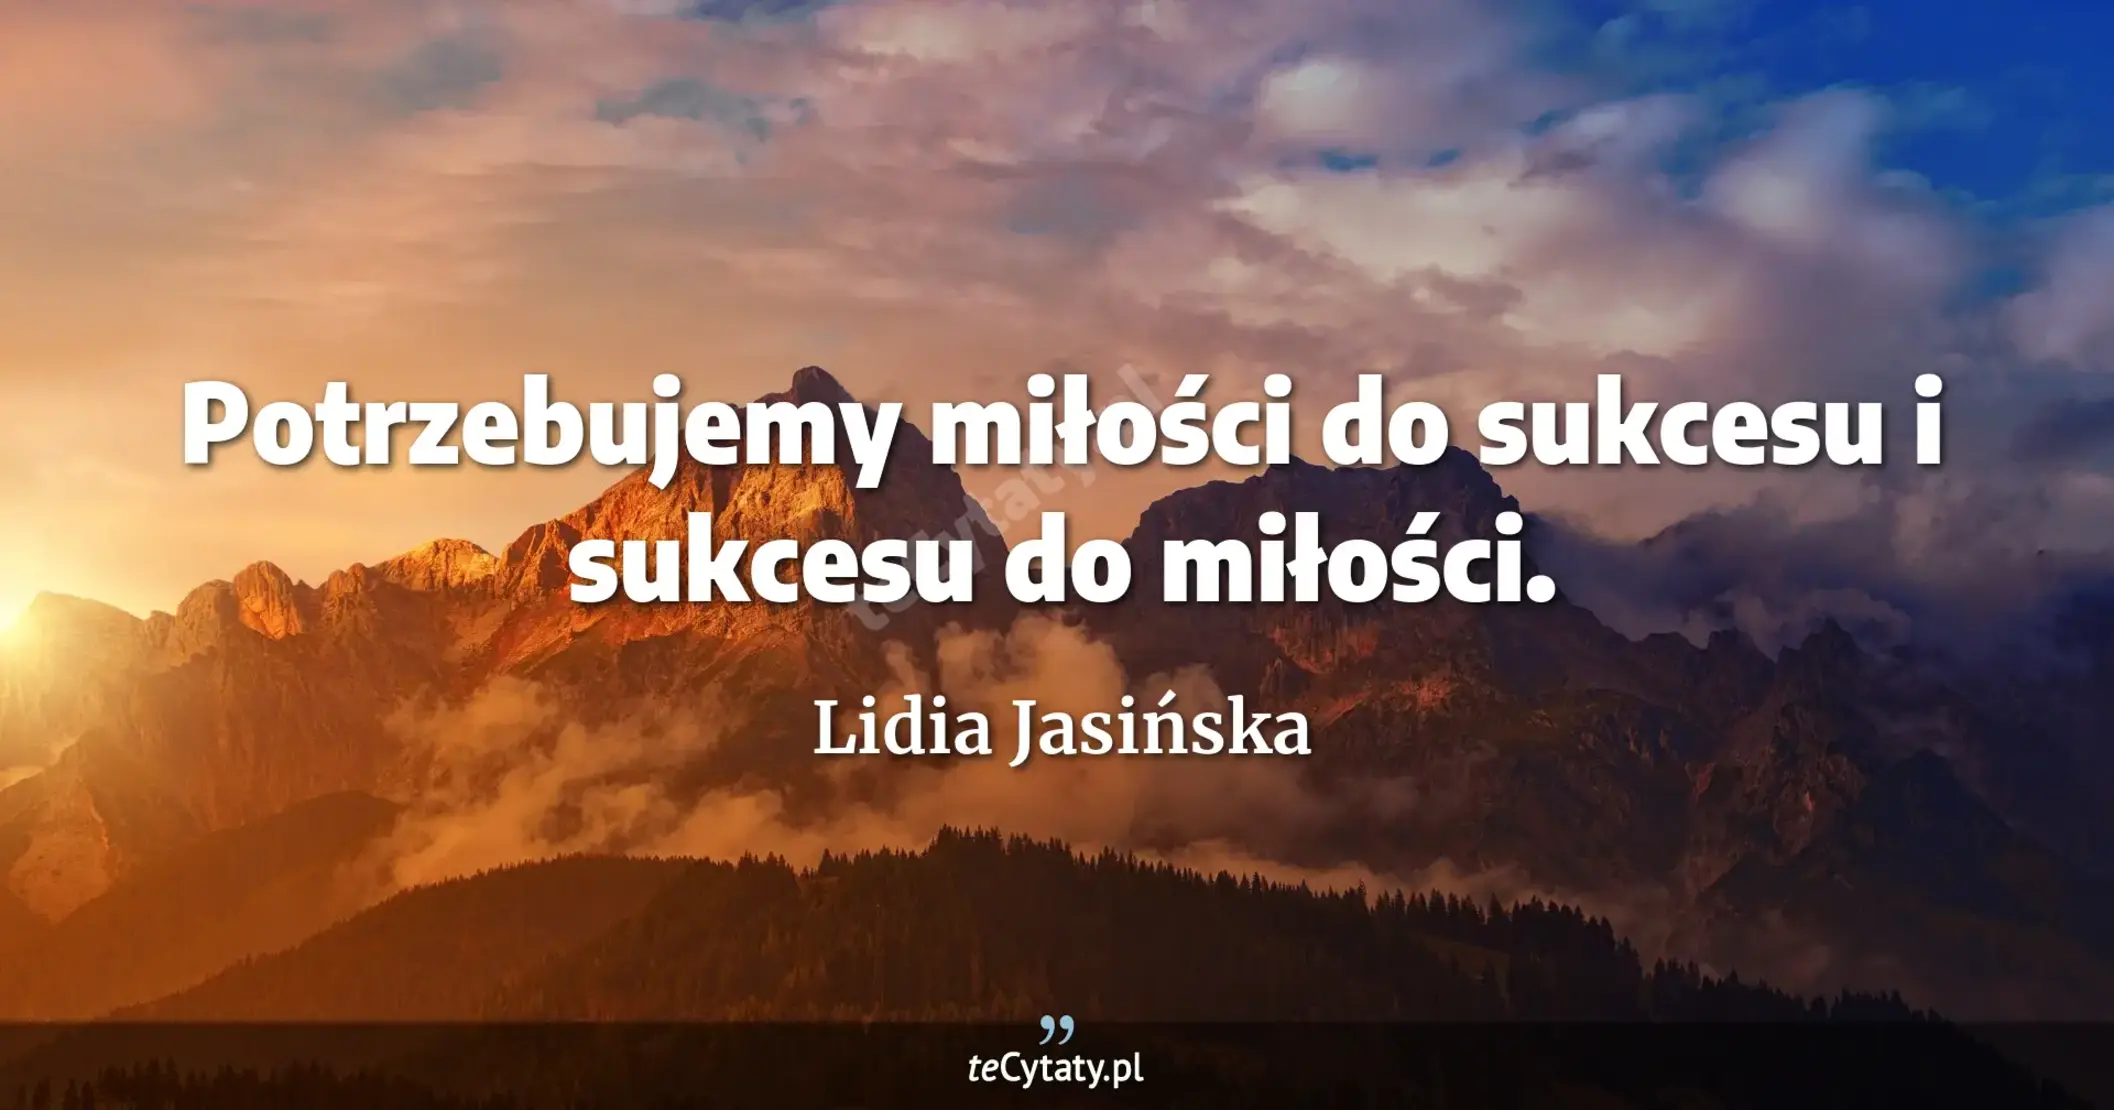 Potrzebujemy miłości do sukcesu i sukcesu do miłości. - Lidia Jasińska